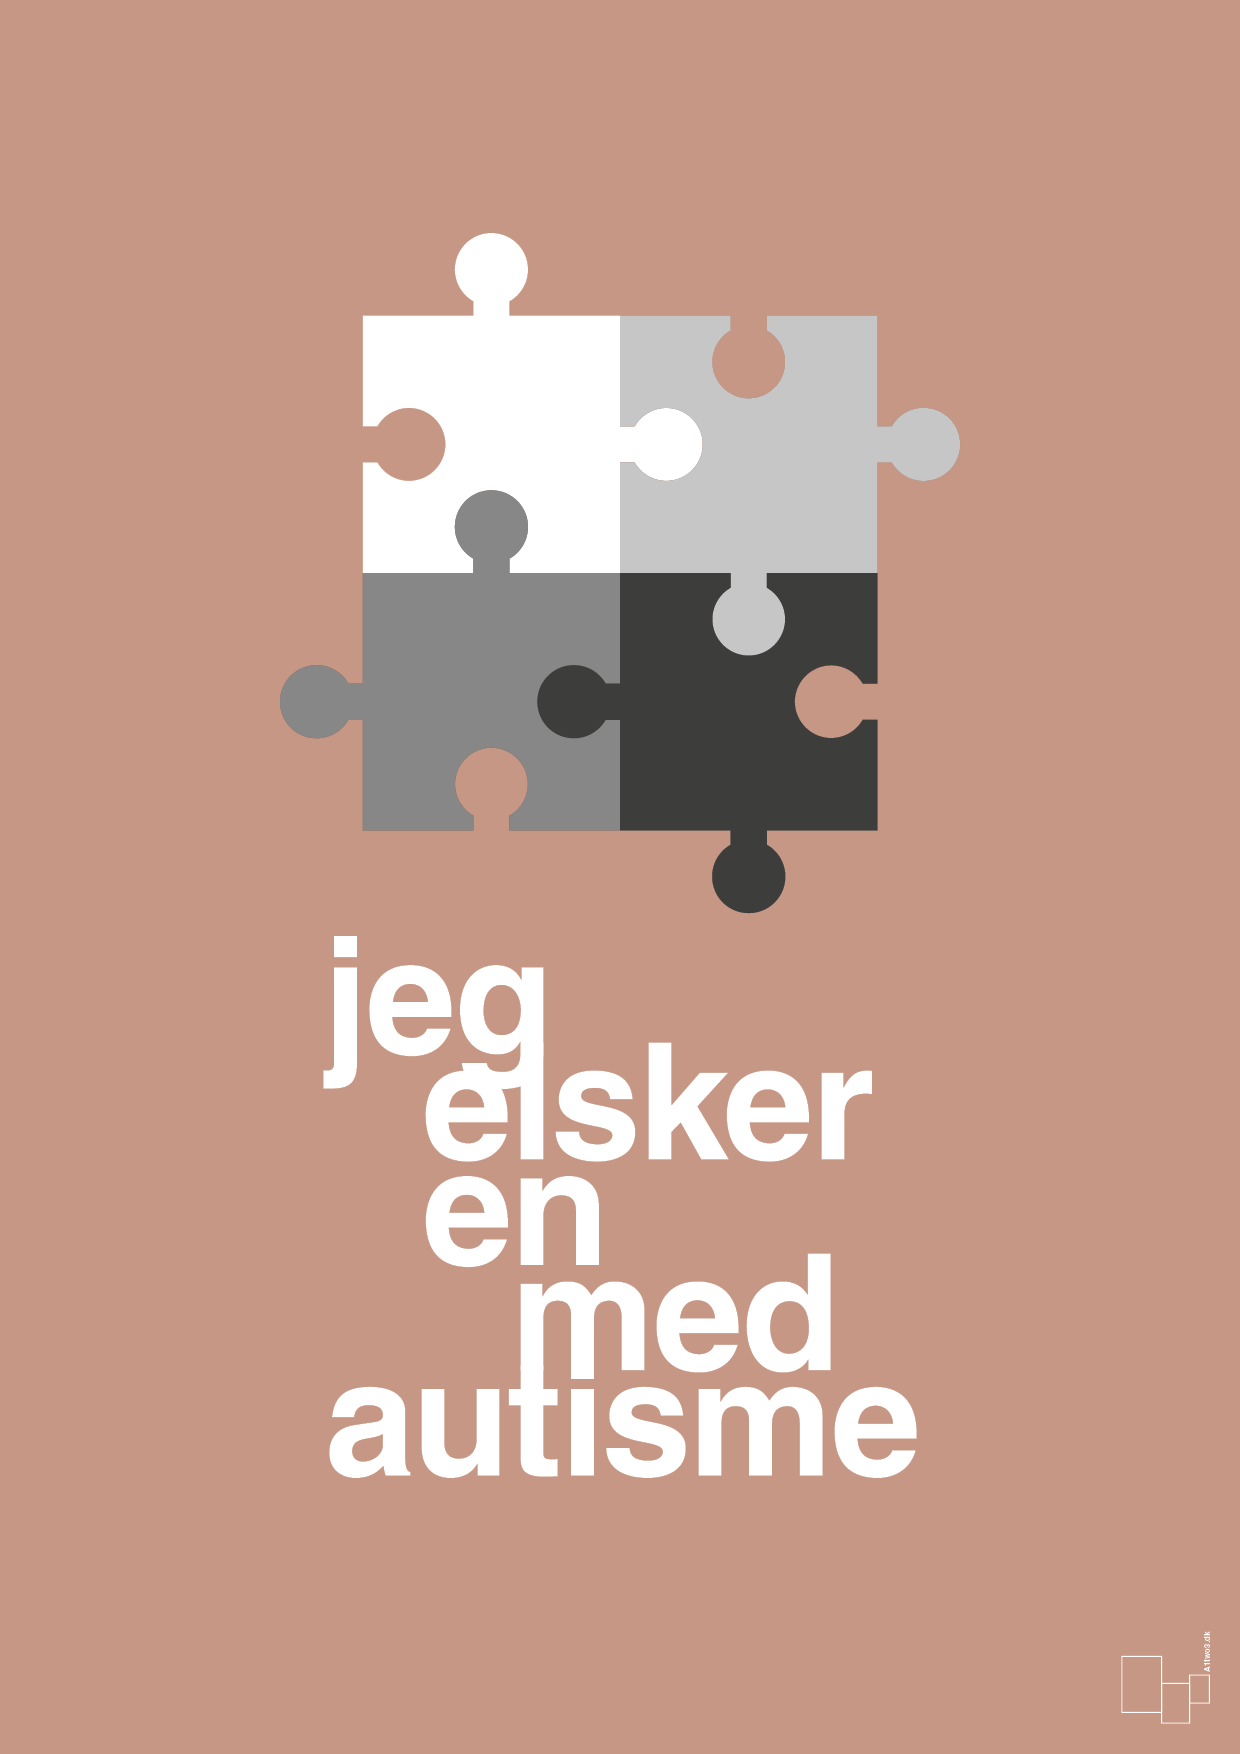 jeg elsker en med autisme - Plakat med Samfund i Powder